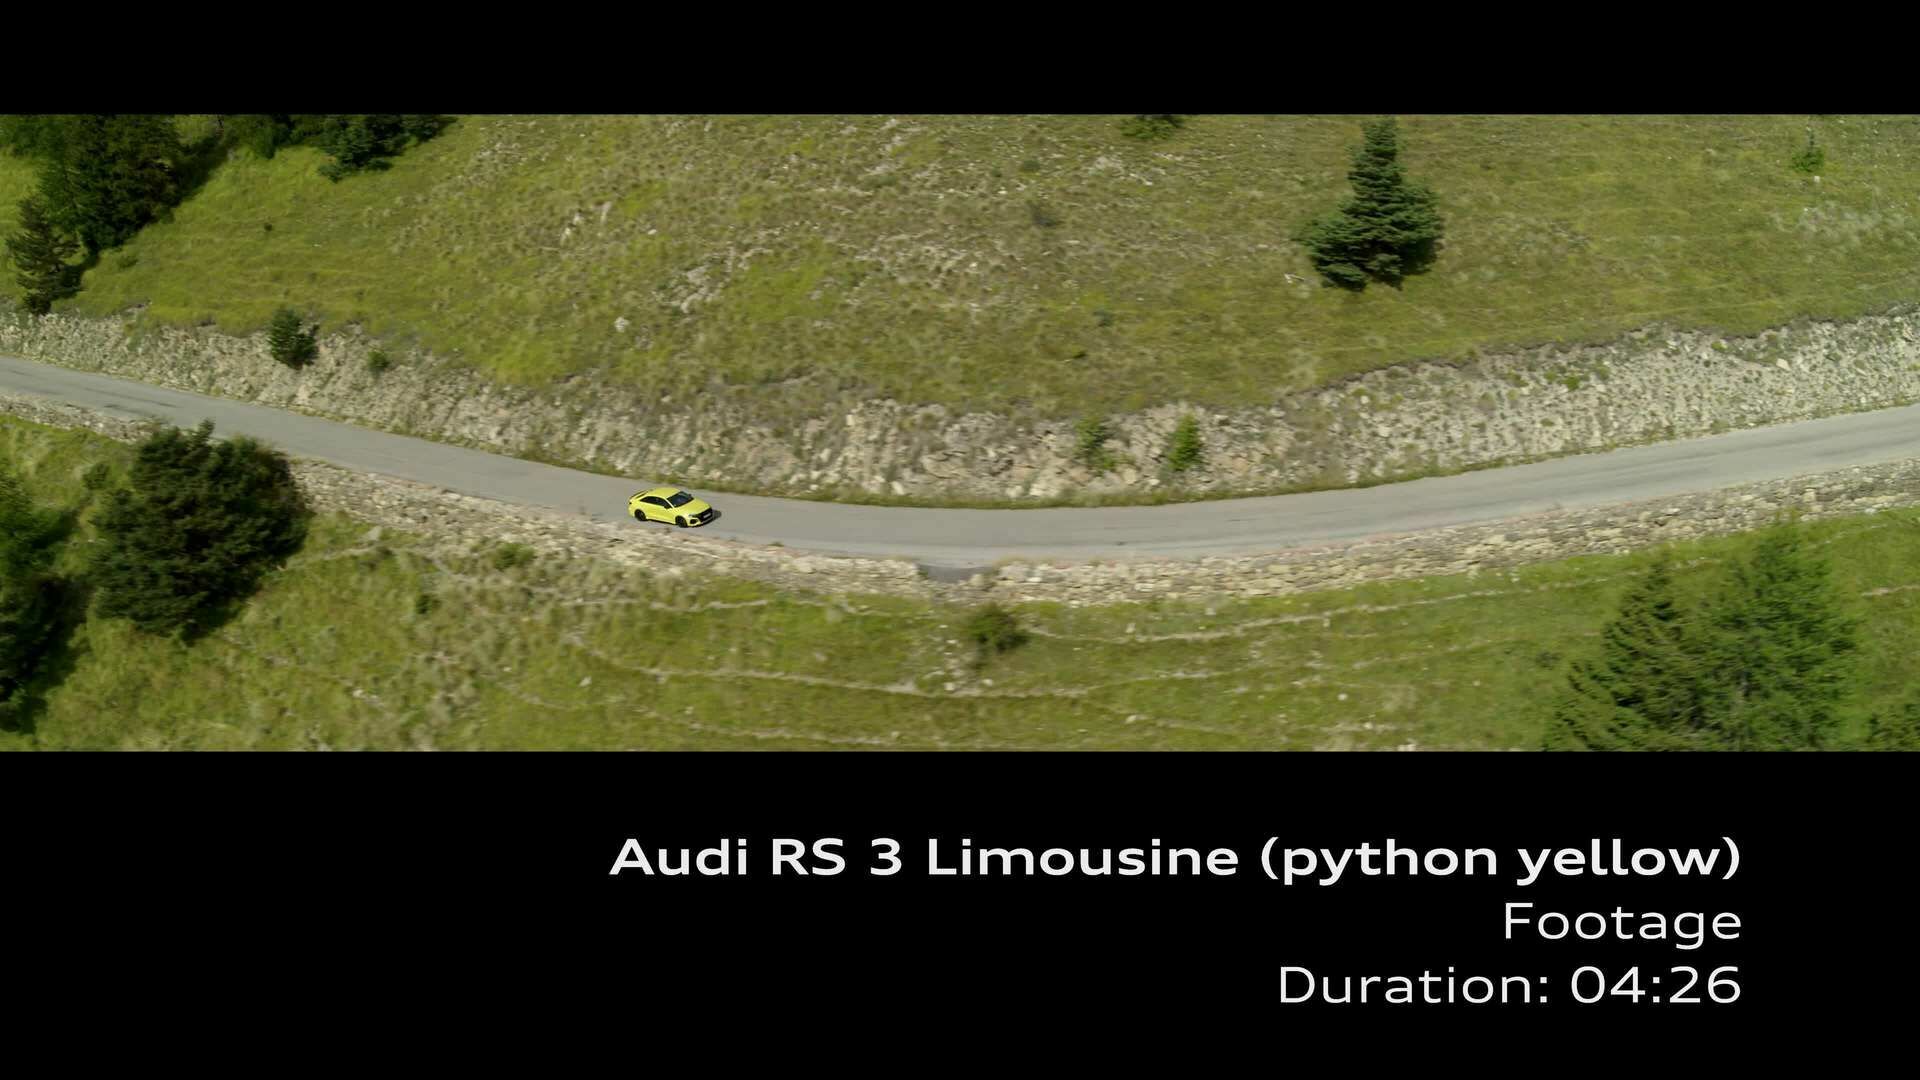 Footage: Audi RS 3 Limousine Pythongelb